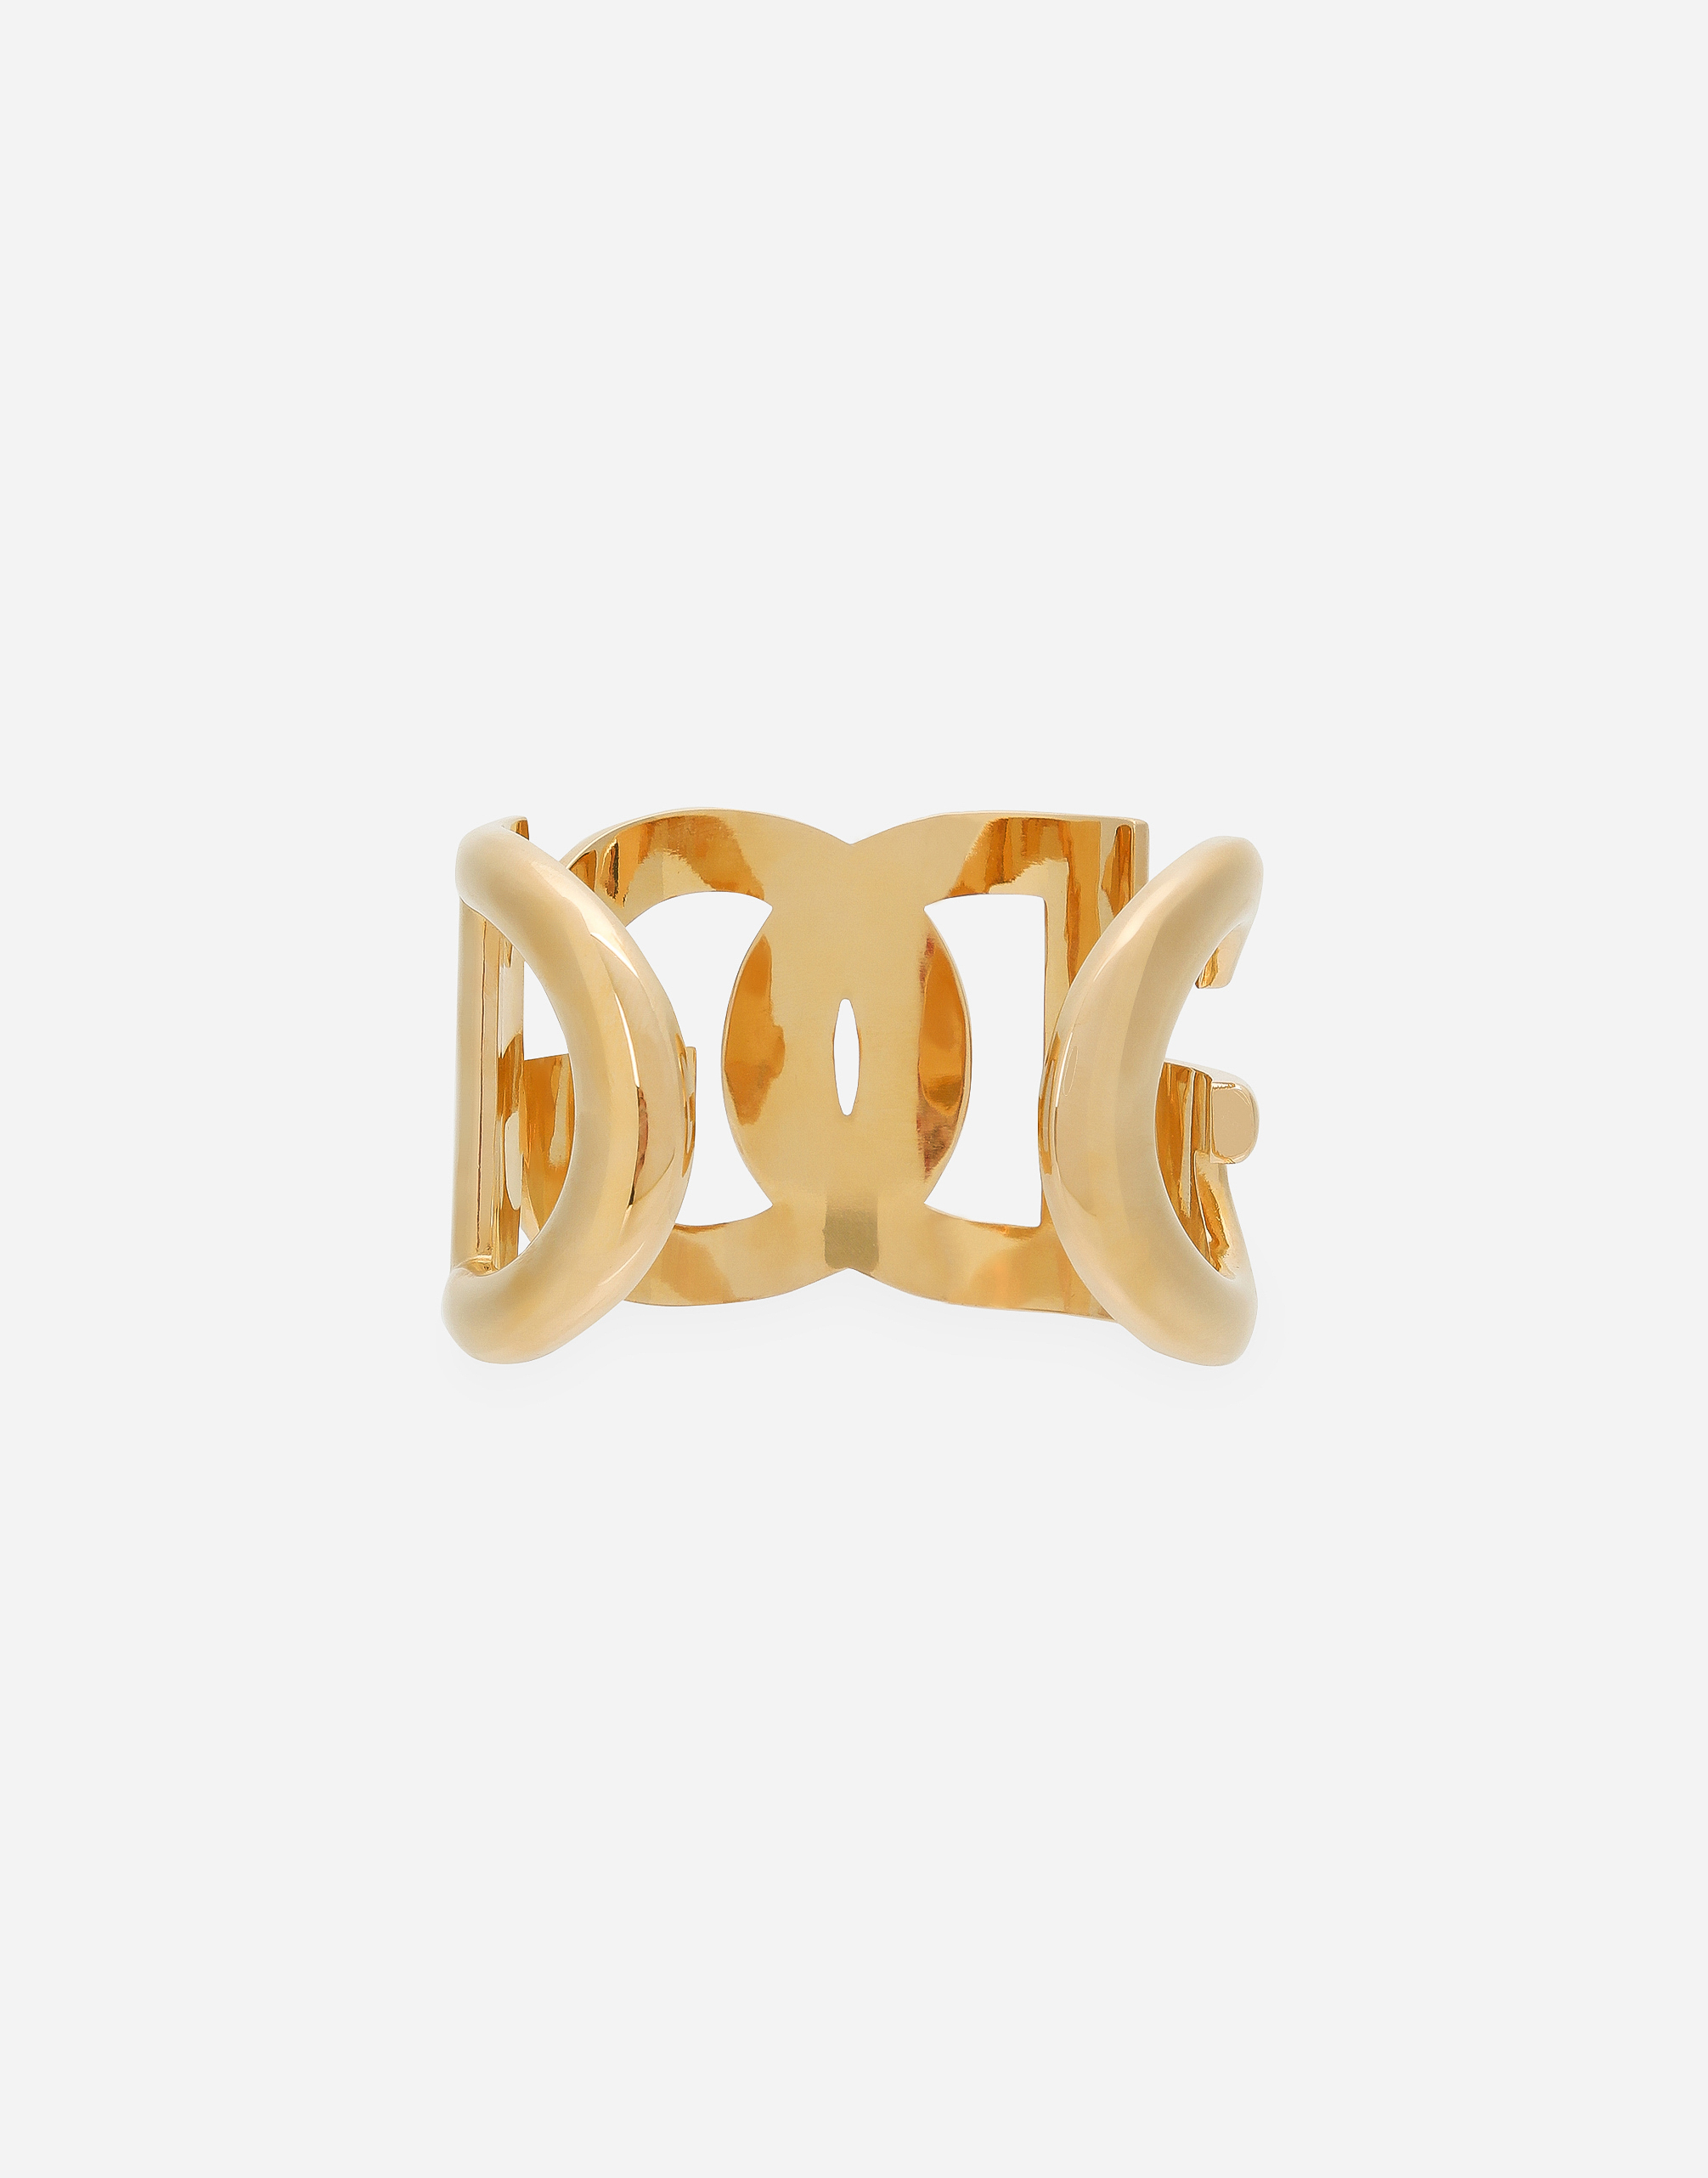 No 1C001 Double Wrap Gold Fringe Bracelet